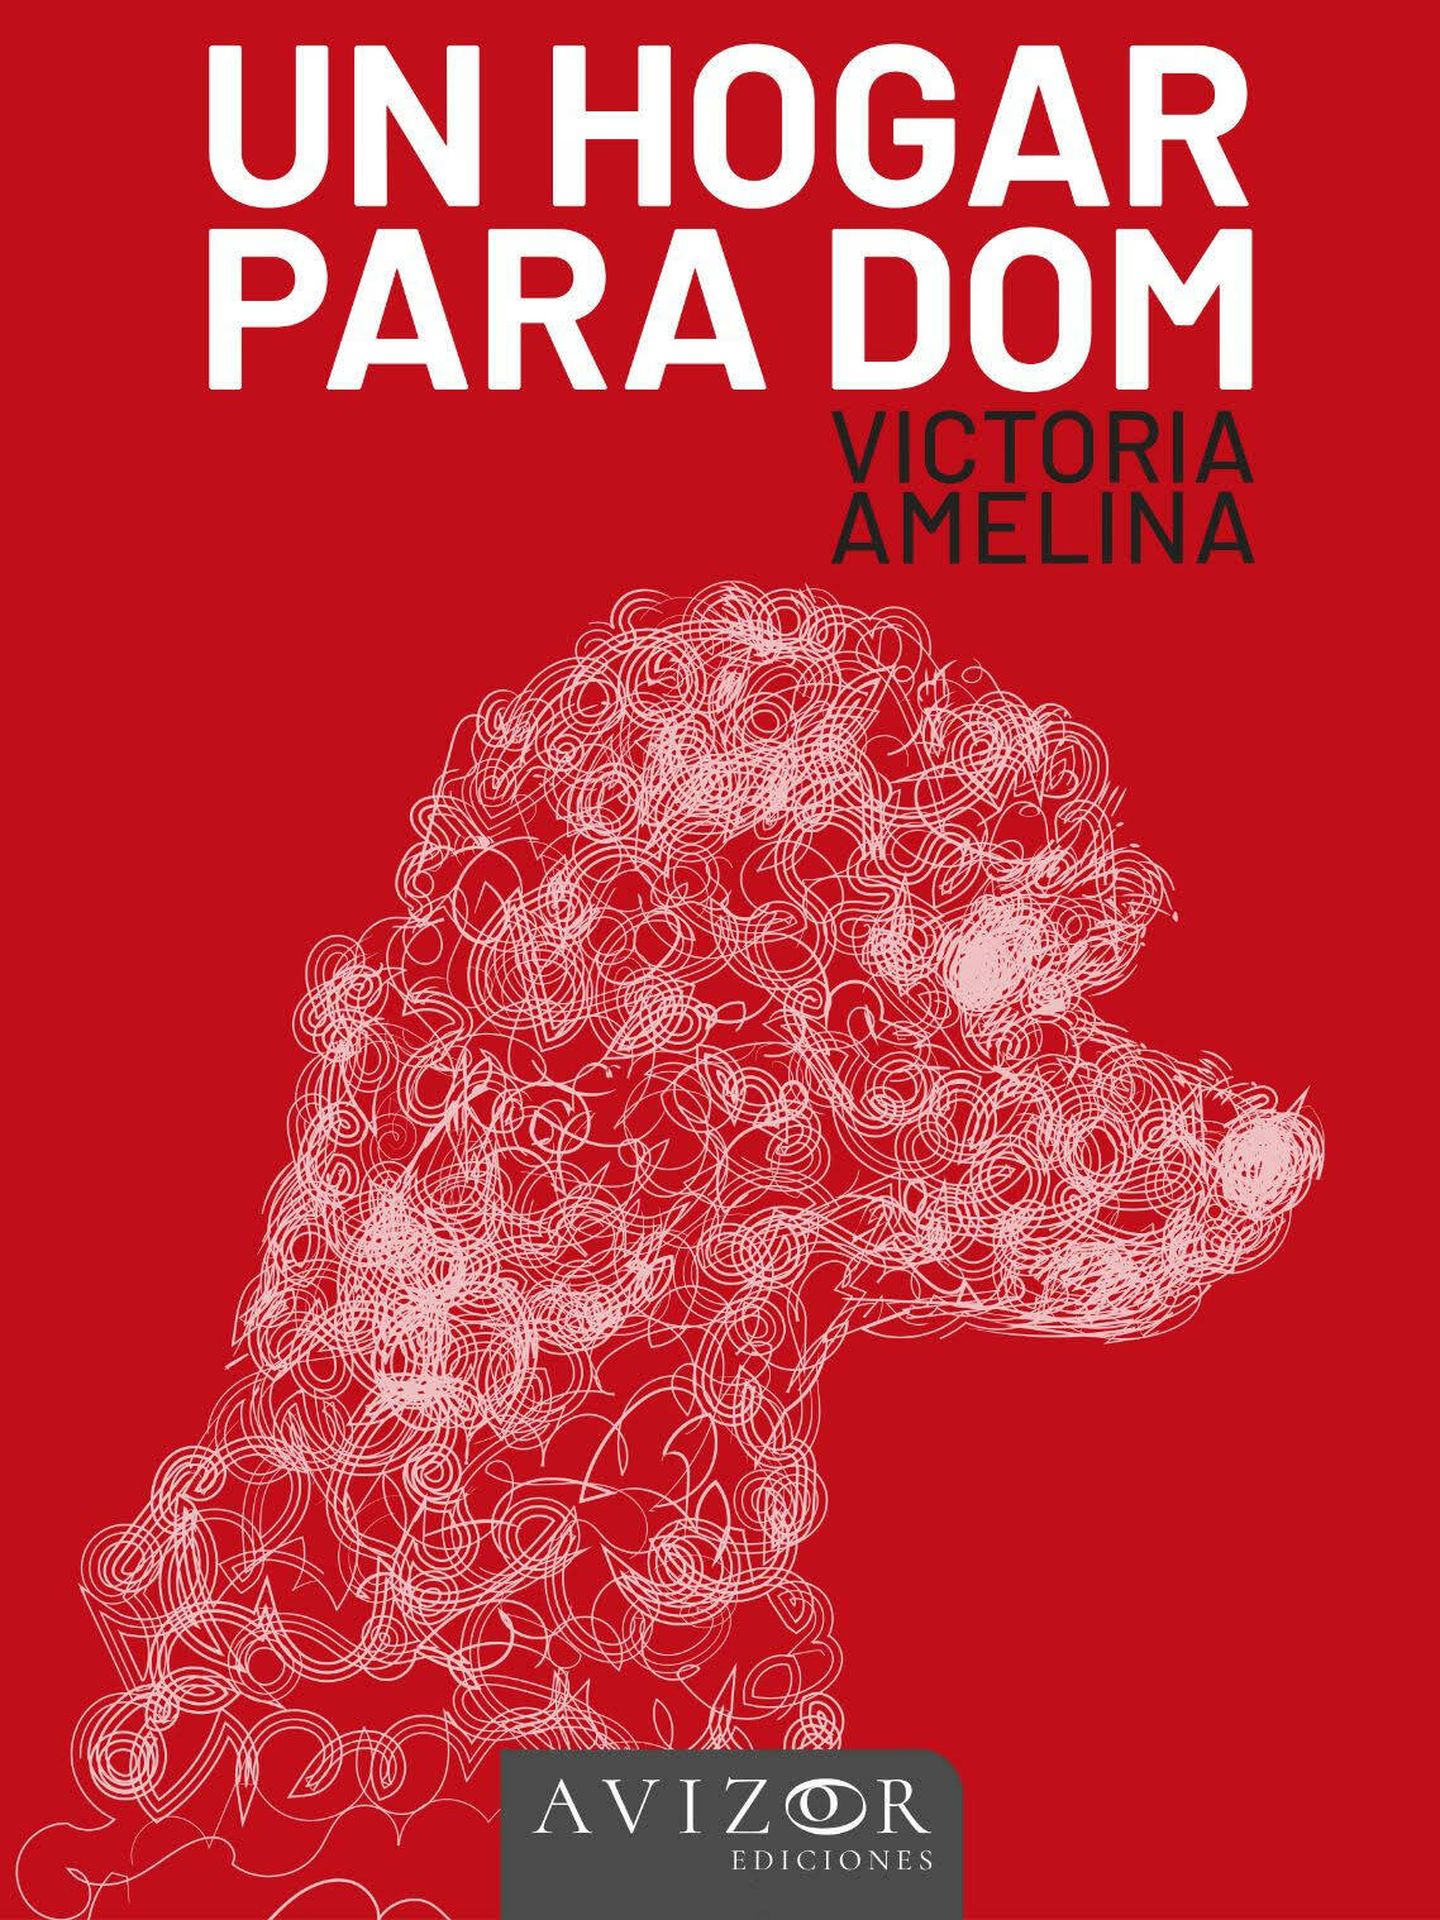 Portada de 'Un hogar para Dom', el libro de Victoria Amelina que acaba de publicar en España Avizor Ediciones.  